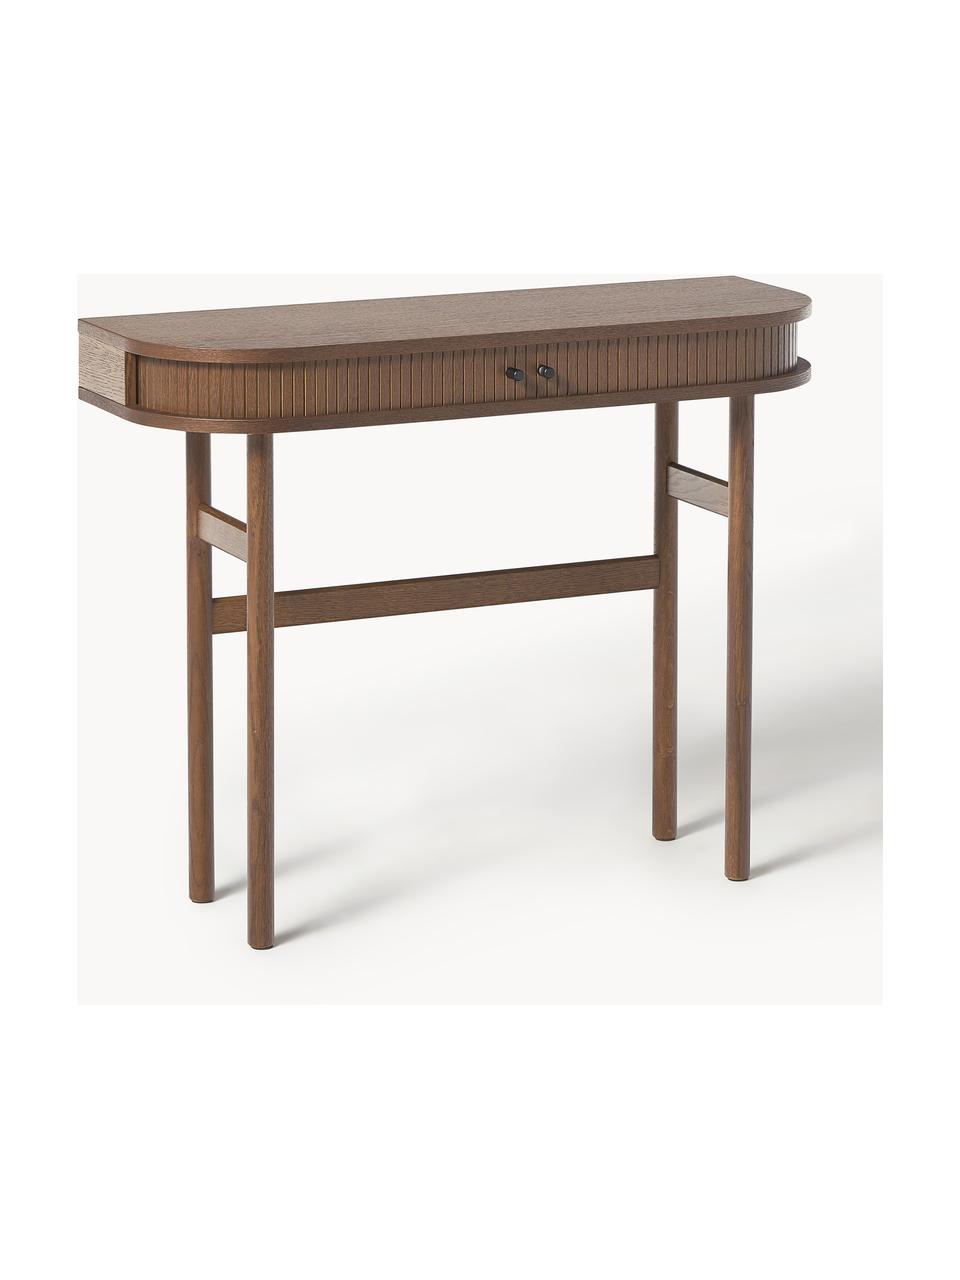 Konzolový stolík s drážkovanou prednou stranou Calary, Dubové drevo, tmavohnedá lakovaná, Š 100 x V 80 cm